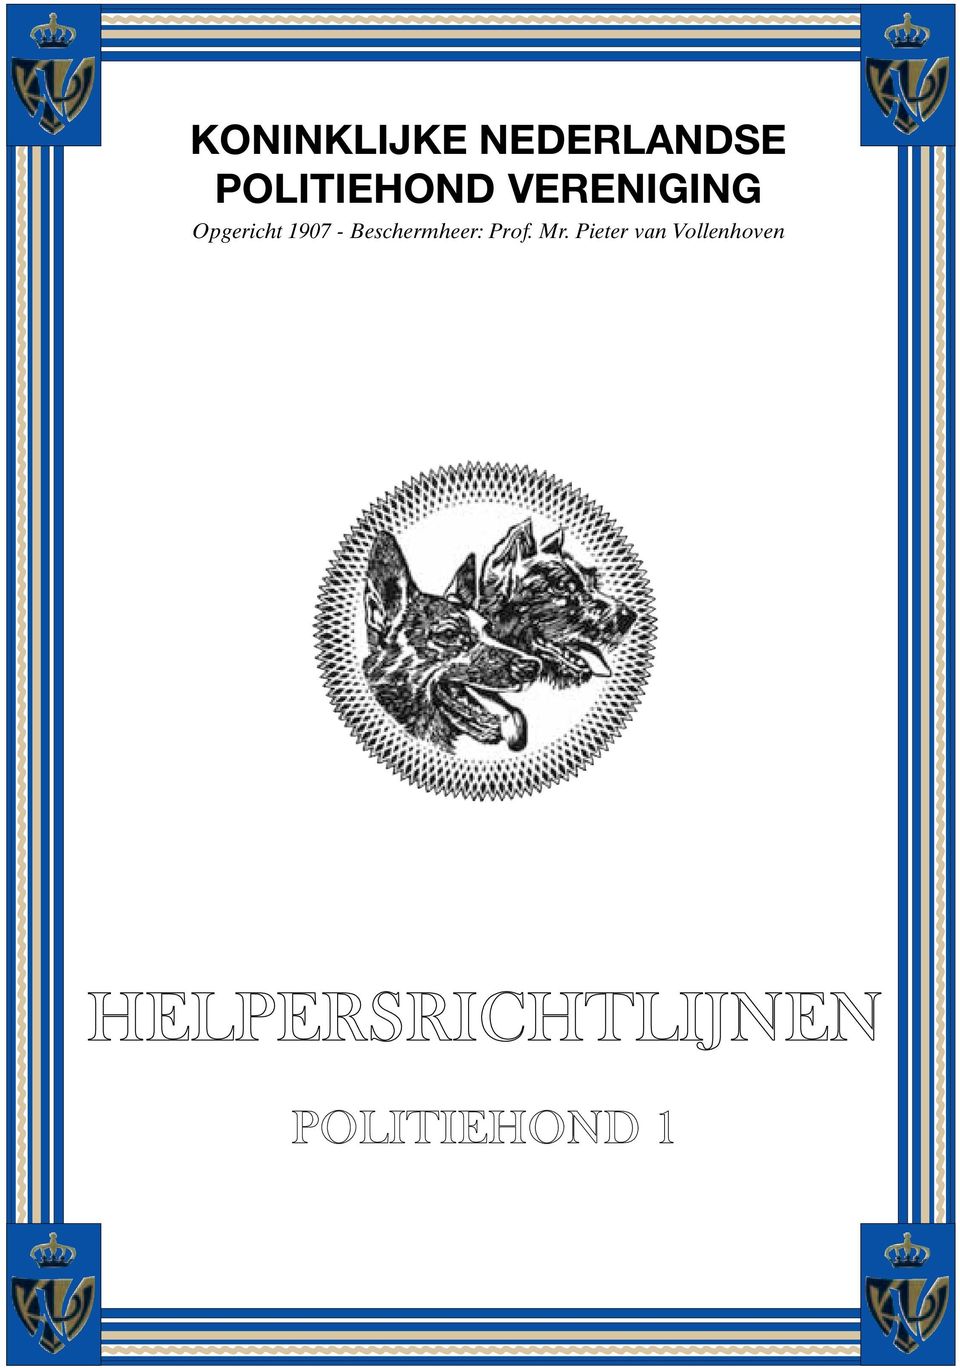 Prof. Mr. Pieter van Vollenhoven HELPERSRICHTLIJNEN POLITIEHOND 1 ~~~~~~~~~~~~~~~~~~~~~~~~ ~~~